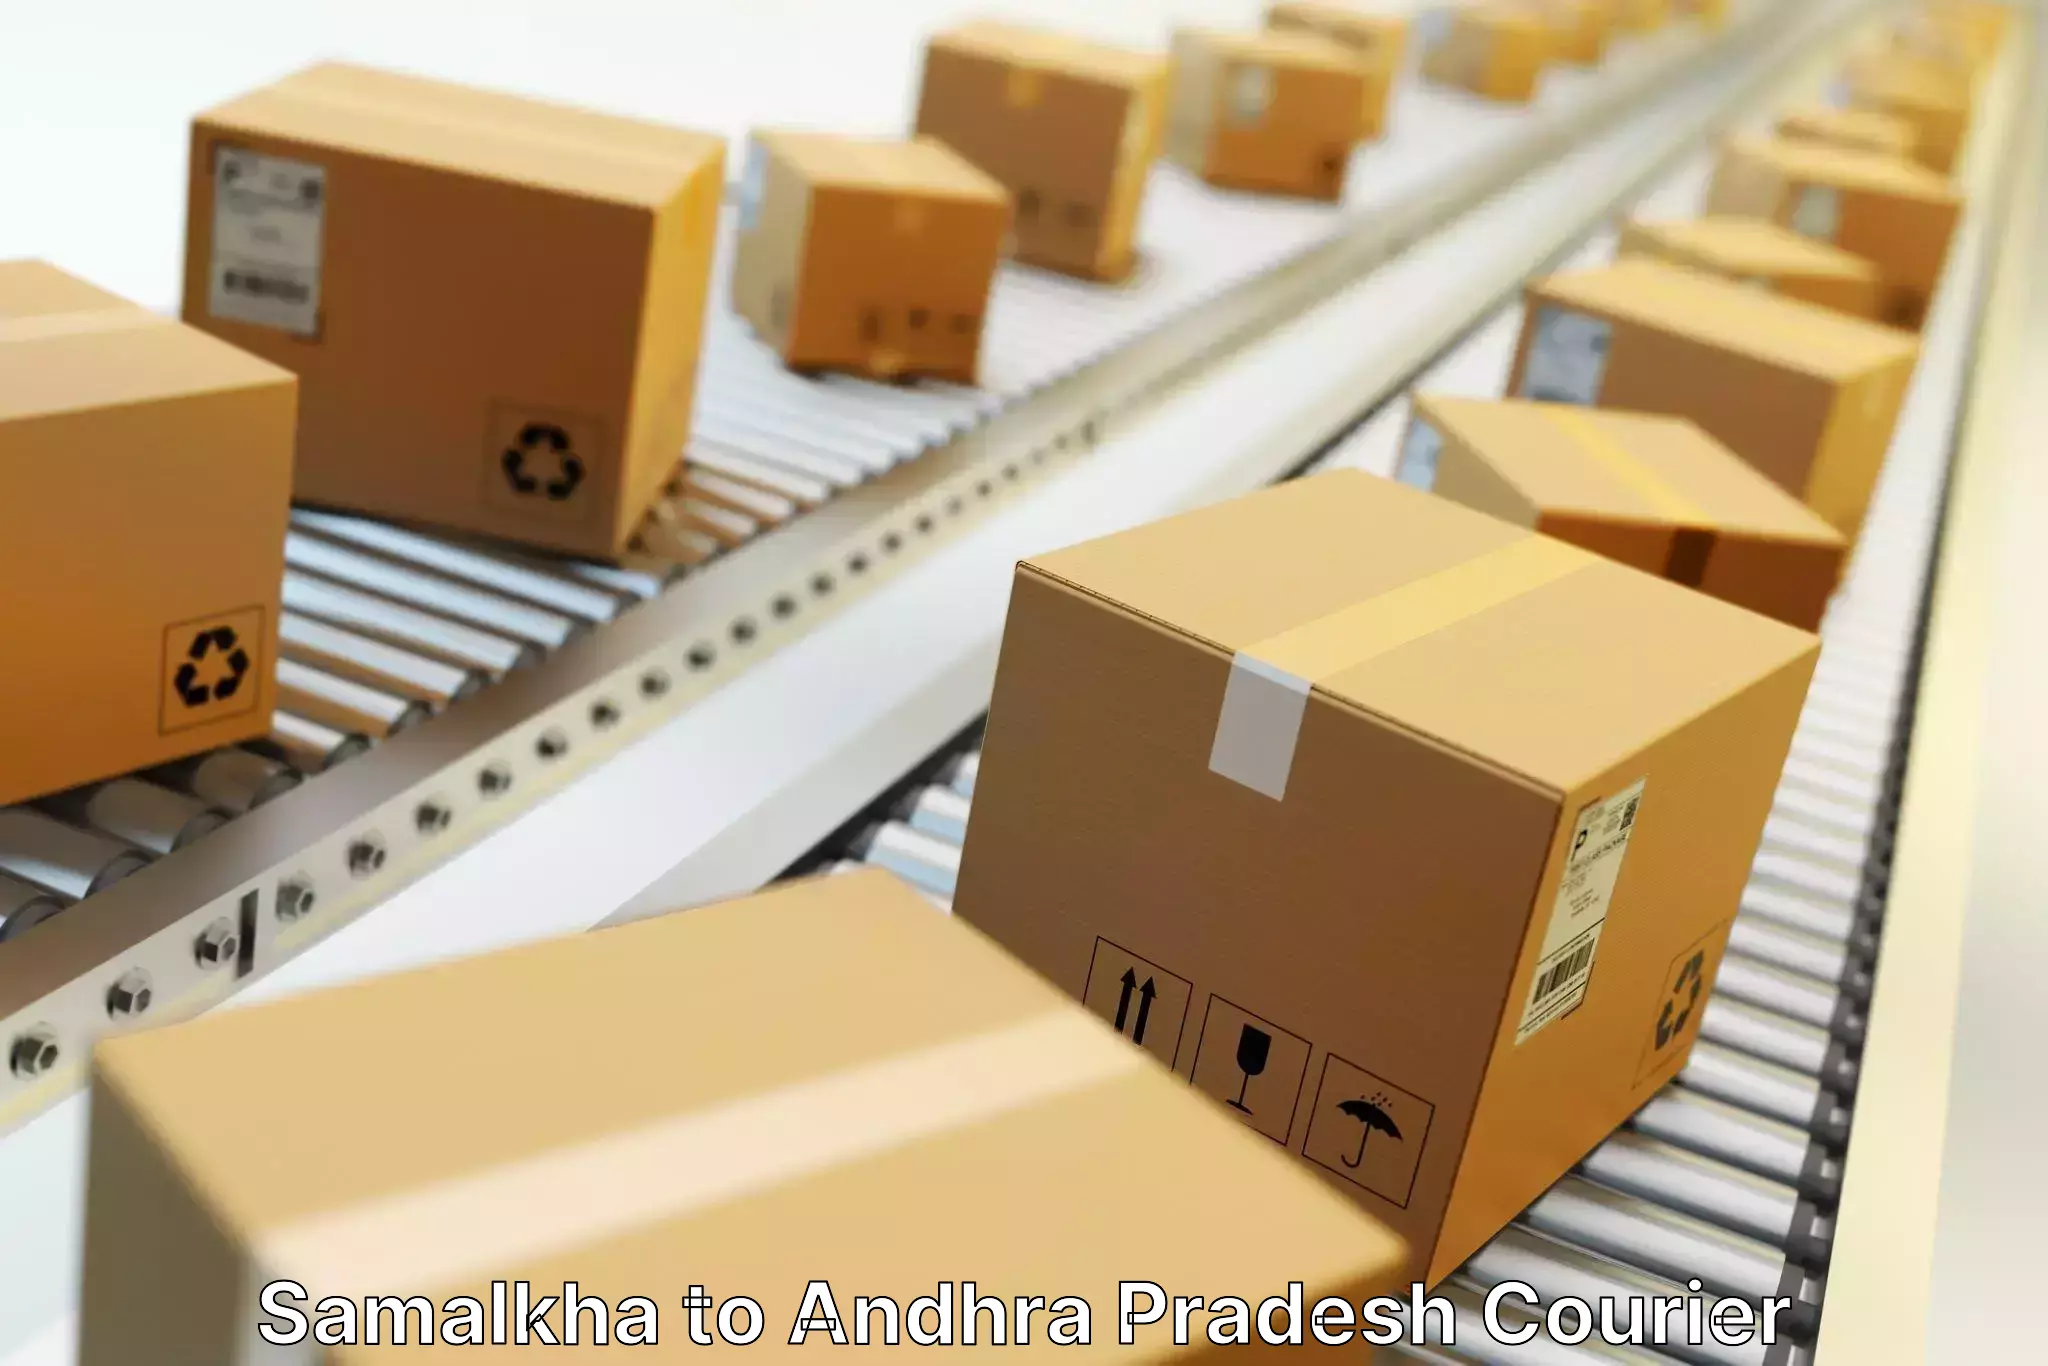 Advanced courier platforms Samalkha to Andhra Pradesh